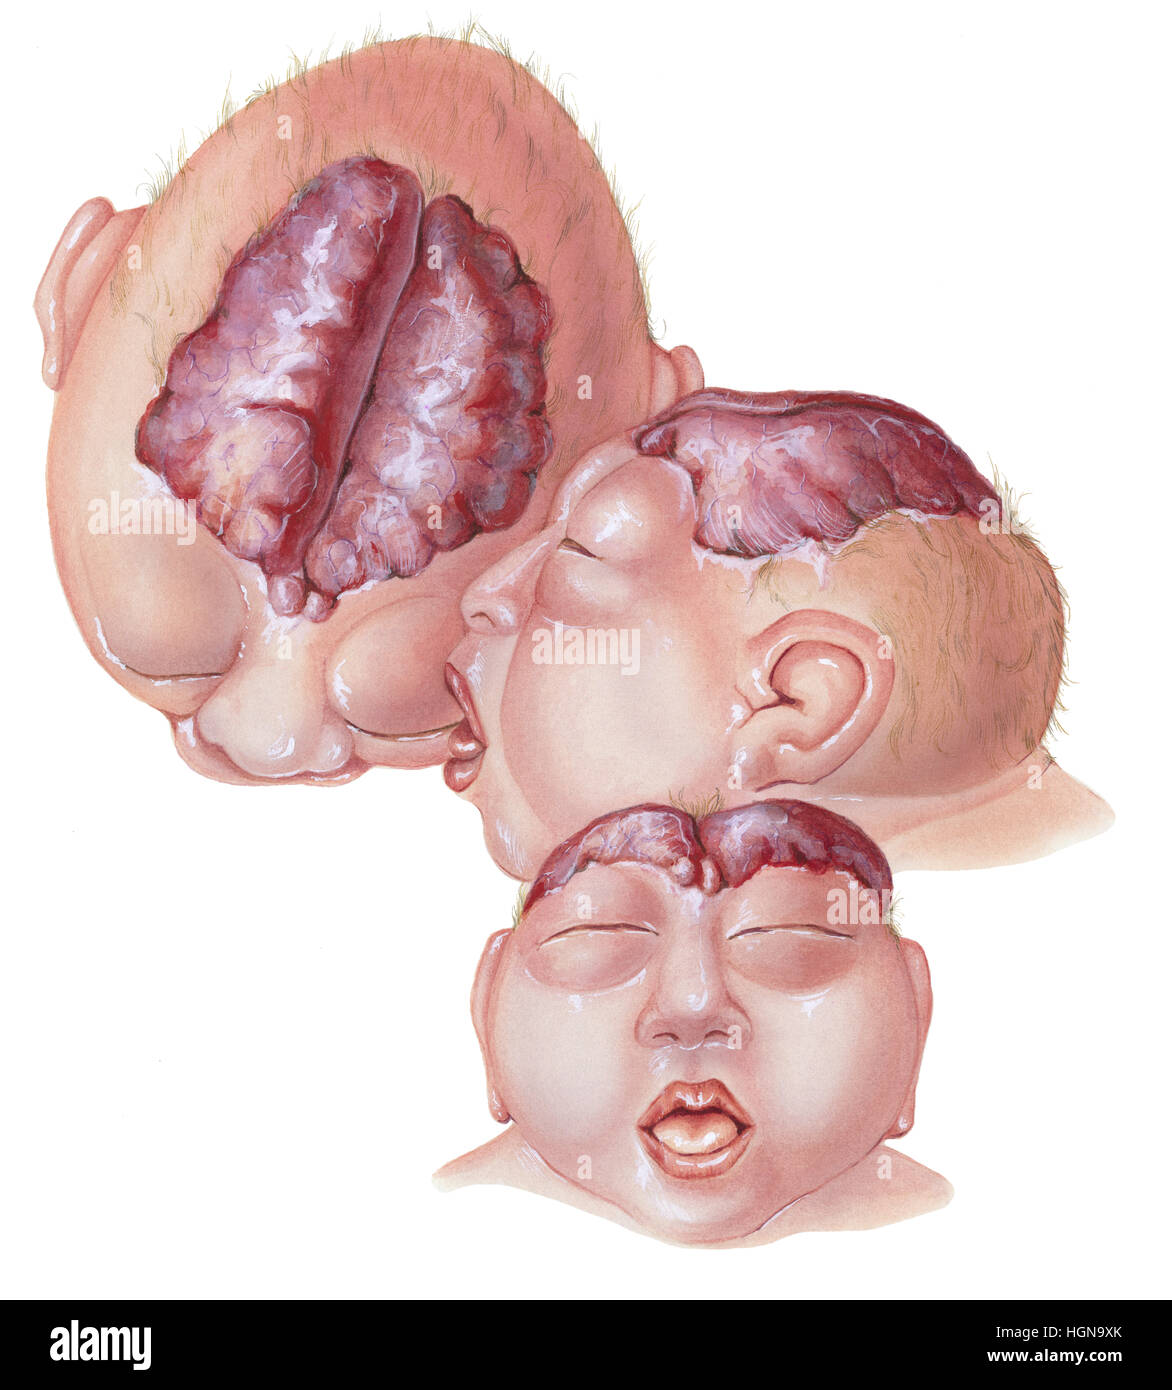 Ein neugeborenes Baby mit Anenzephalie zeigt das Gehirn durch den Schädel von drei Ansichten Stockfoto